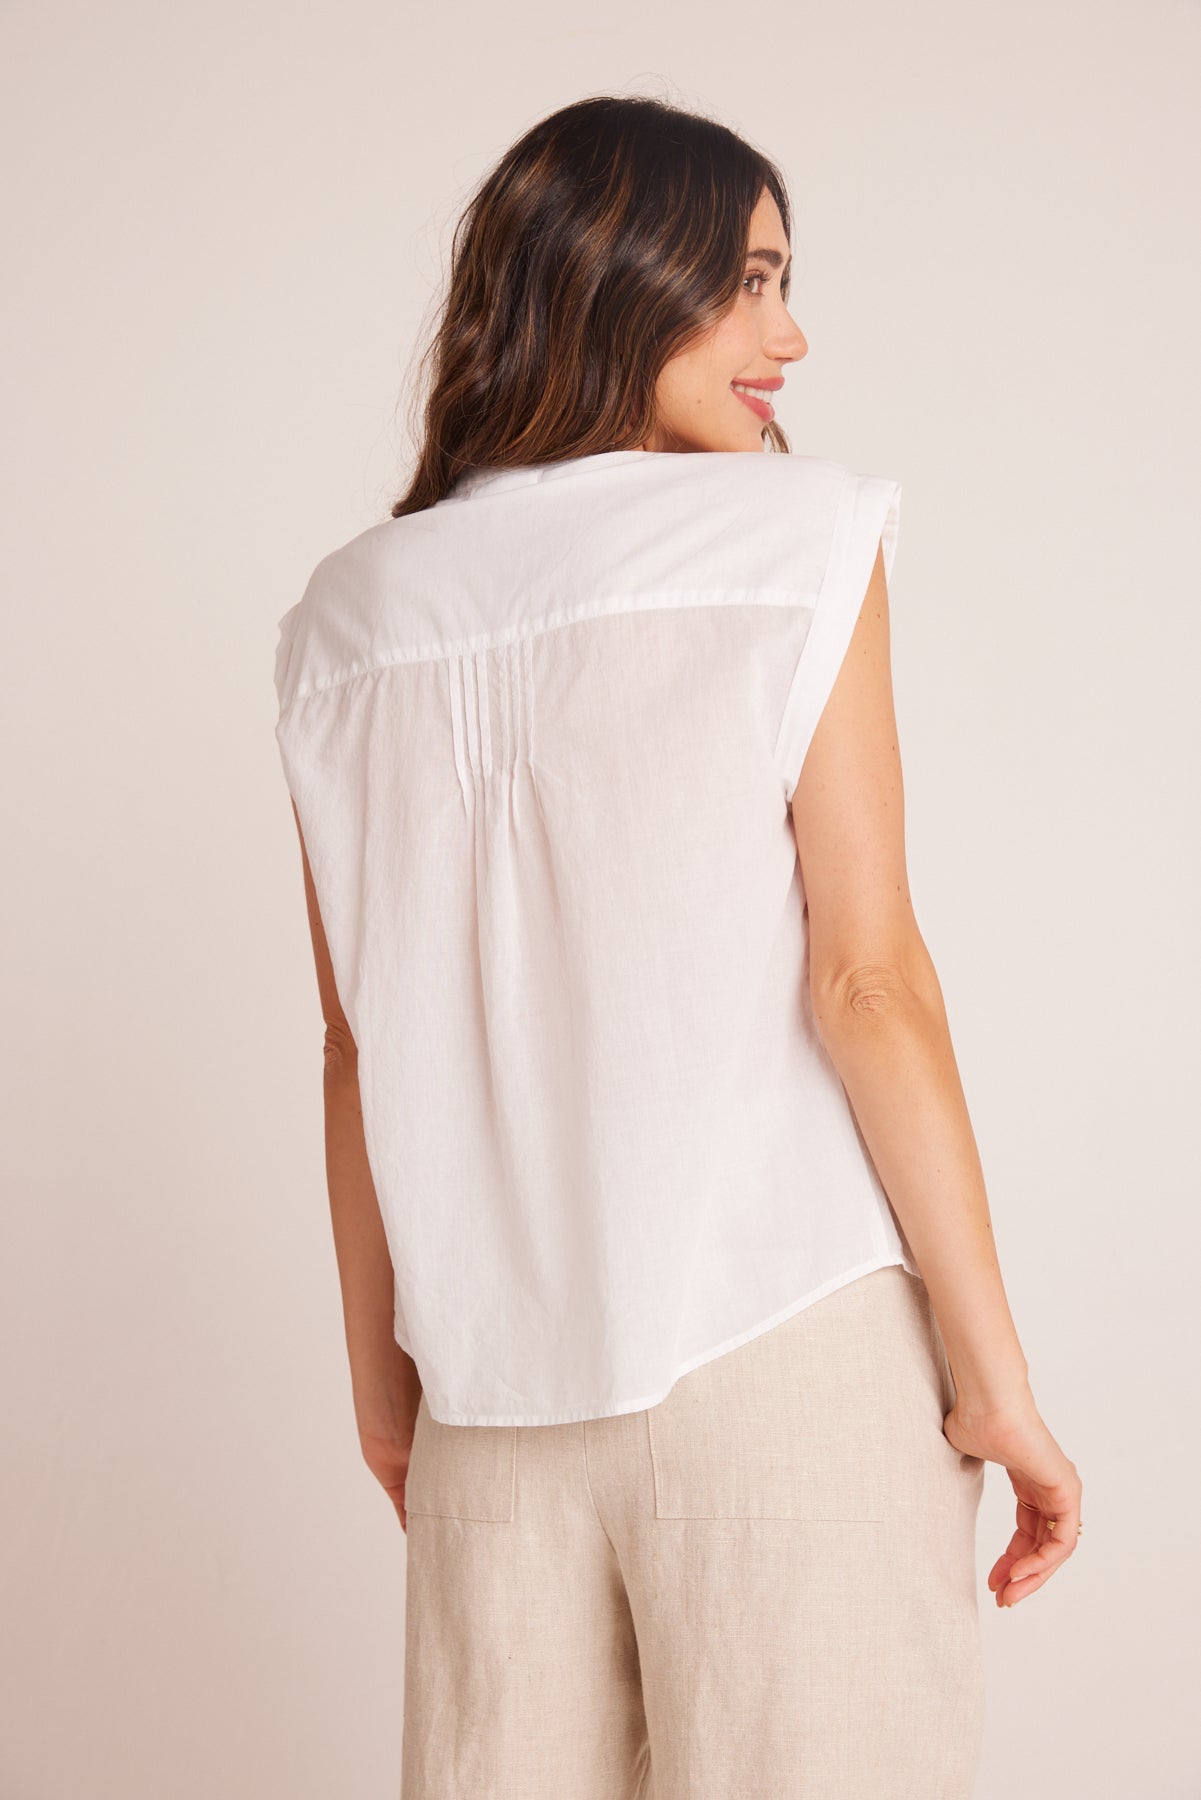 Bella DahlShort Sleeve Pintuck Pullover - WhiteTops